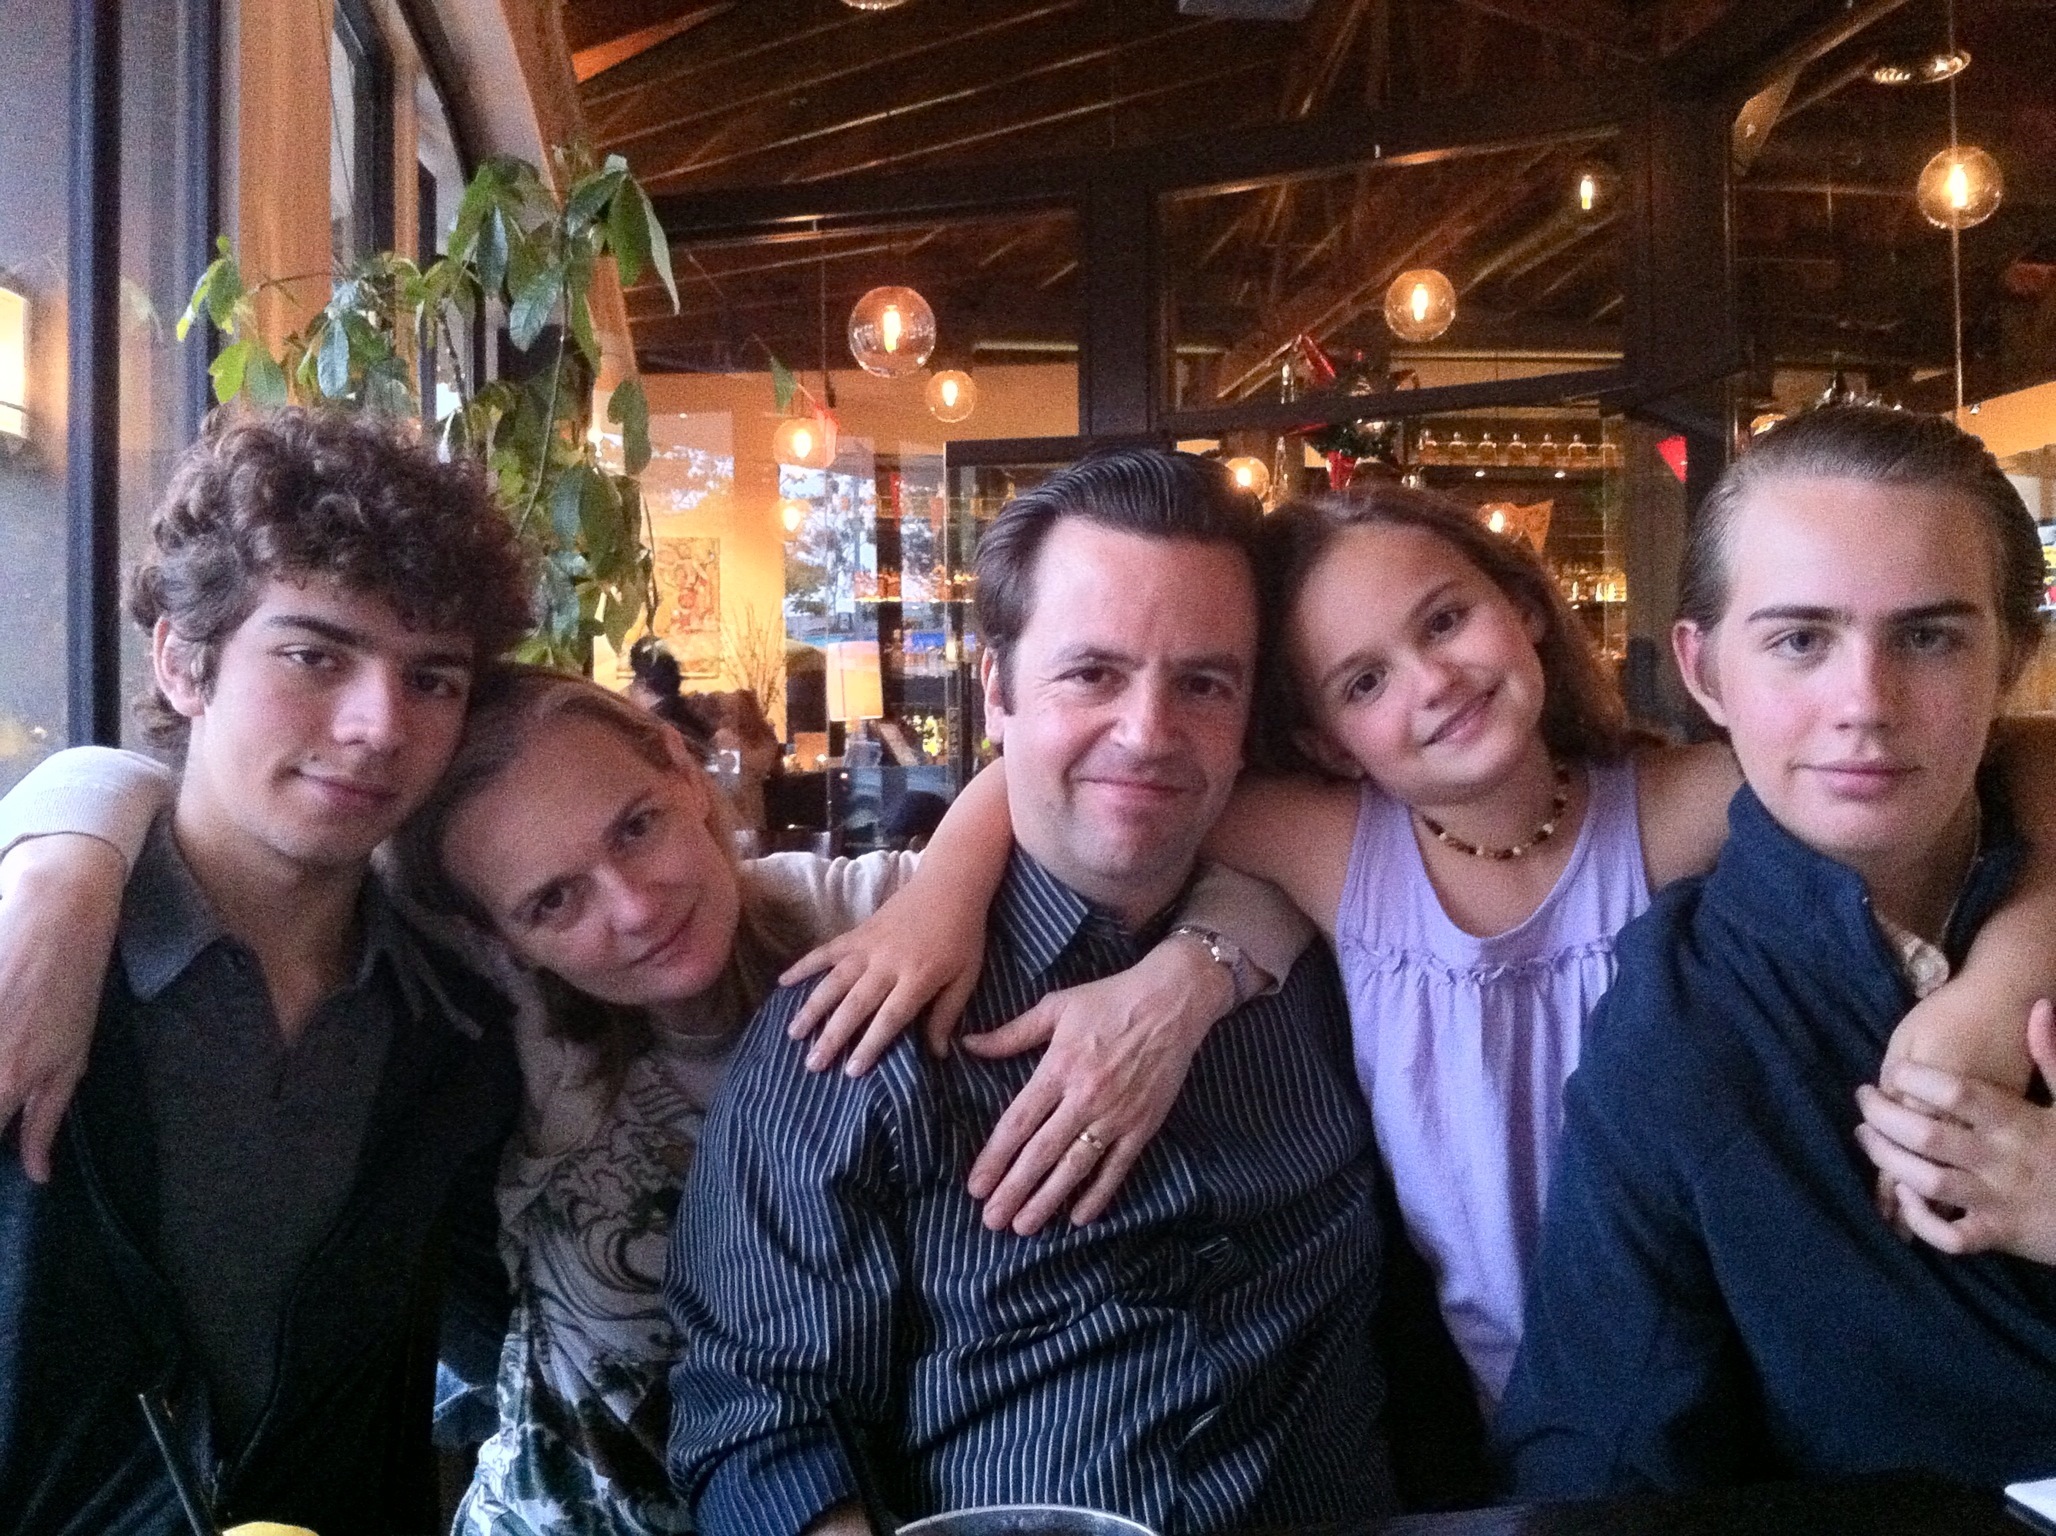 Carrasco-Sanderson Family. From left to right: Juan-Salvador (18), Andrea Sanderson, Salvador Carrasco, Cassandra (8), Sebastian (15). Santa Monica, CA; May 7, 2012.